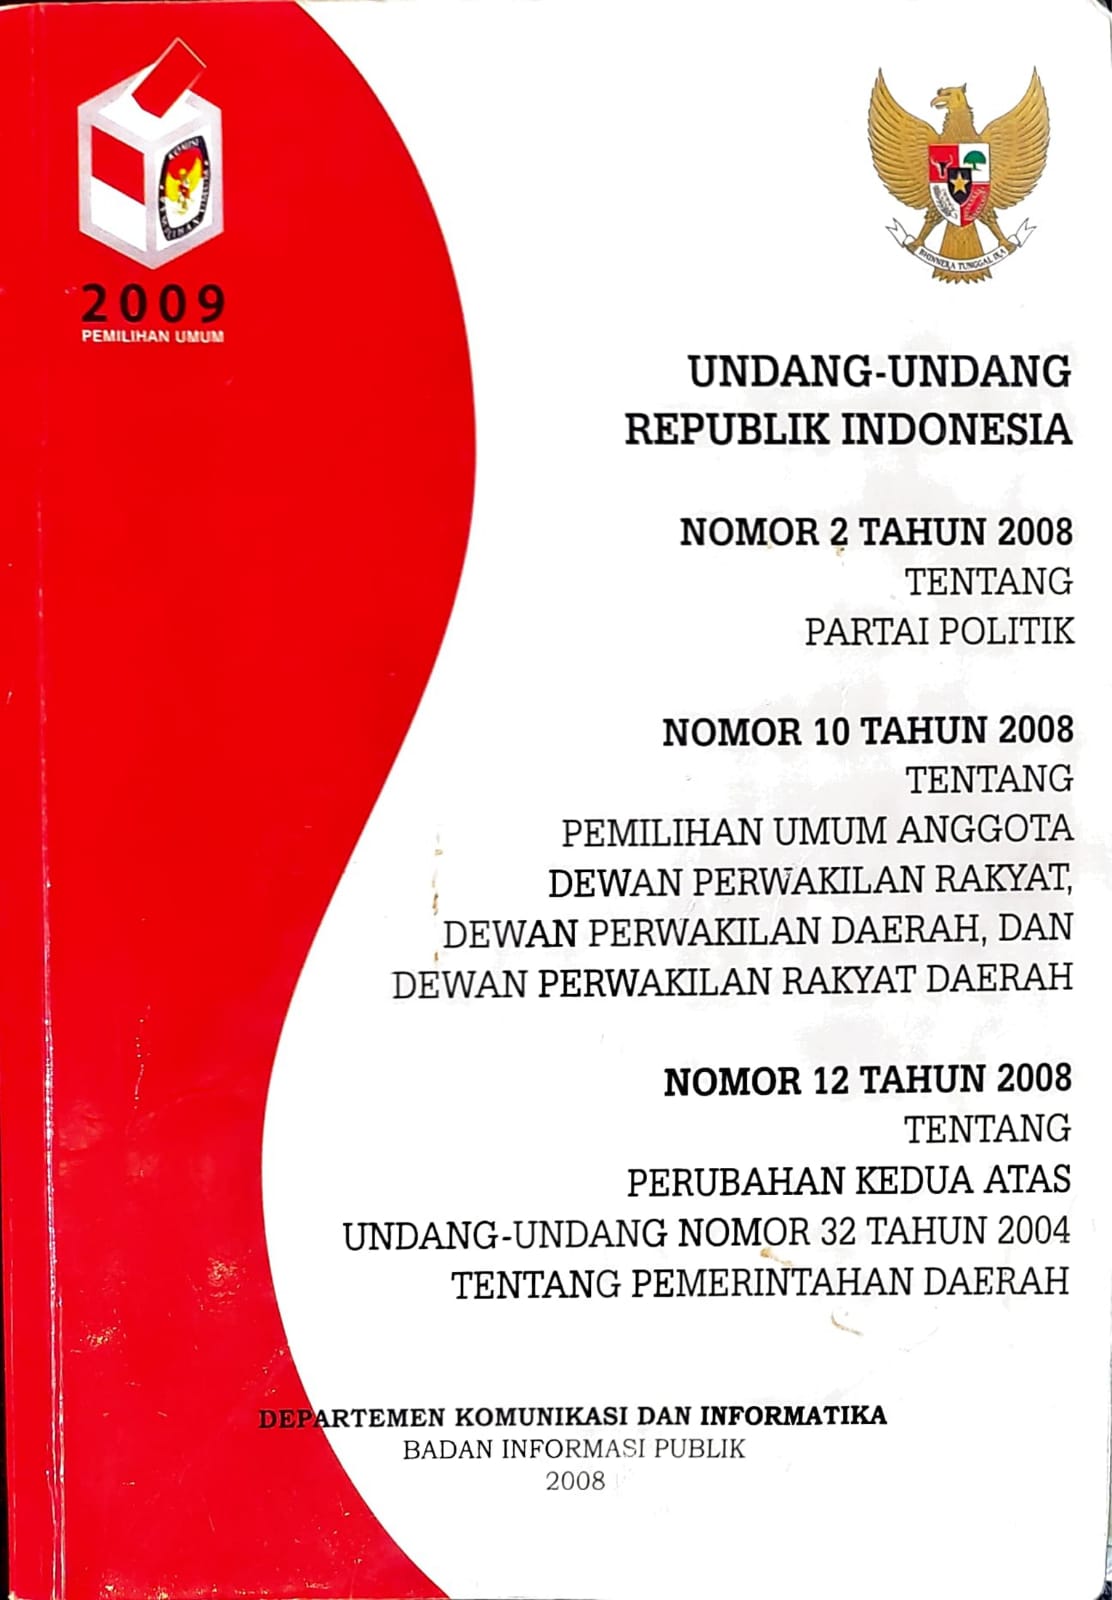 Undang-undang republik indonesia nomor 2 tahun 2008, nomor 10 tahun 2008, dan nomor 12 tahun 2008